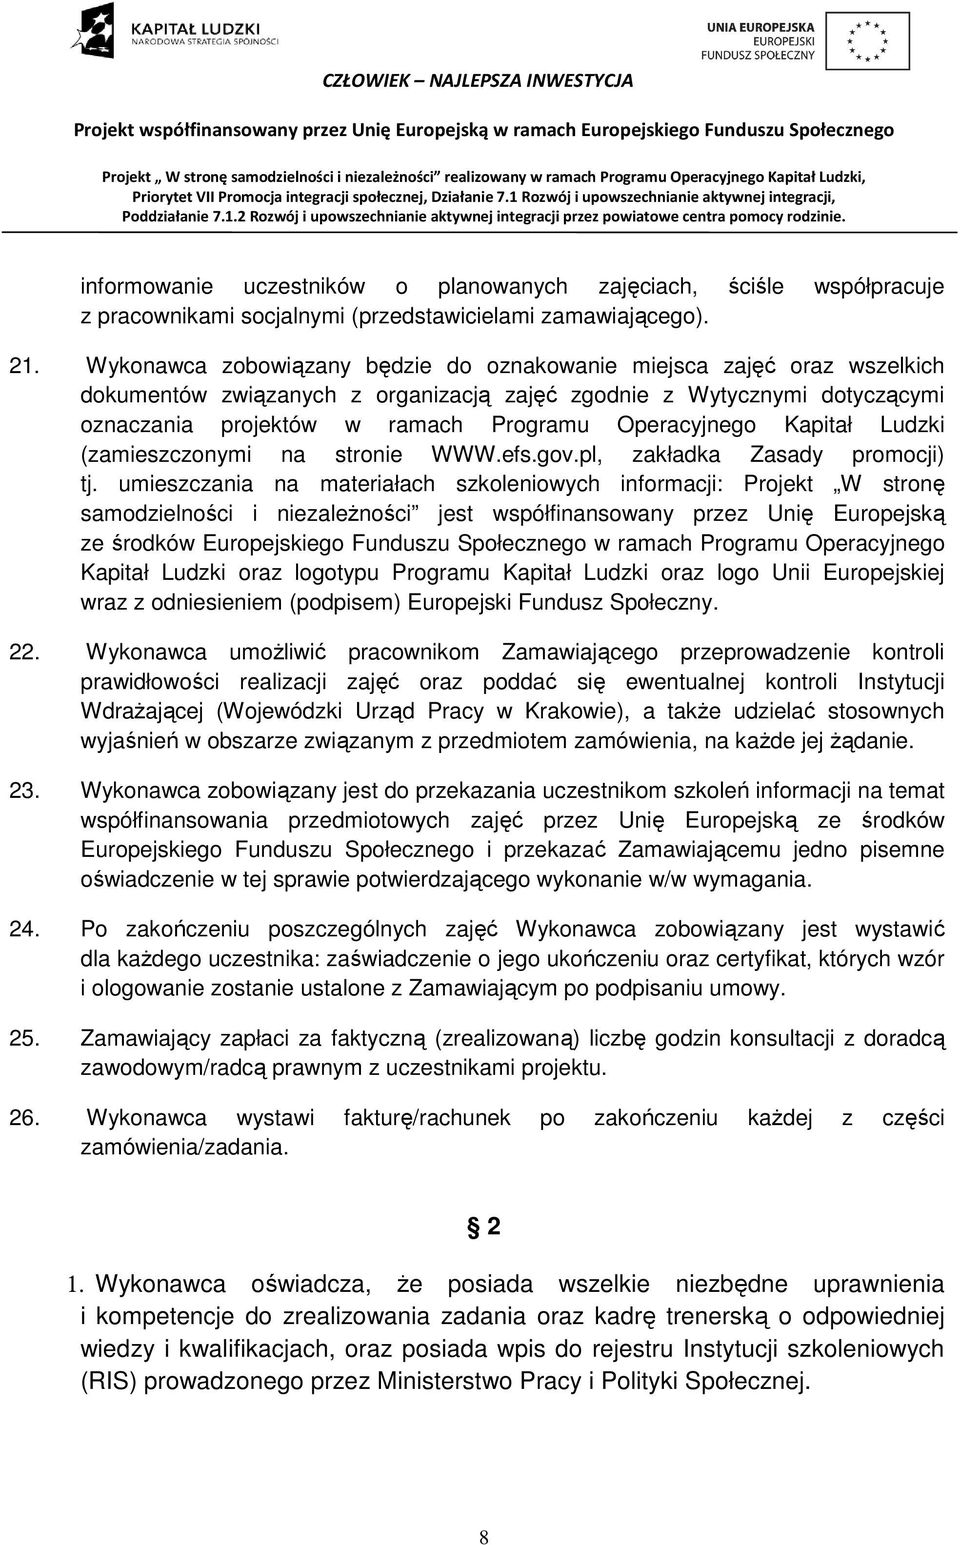 Kapitał Ludzki (zamieszczonymi na stronie WWW.efs.gov.pl, zakładka Zasady promocji) tj.